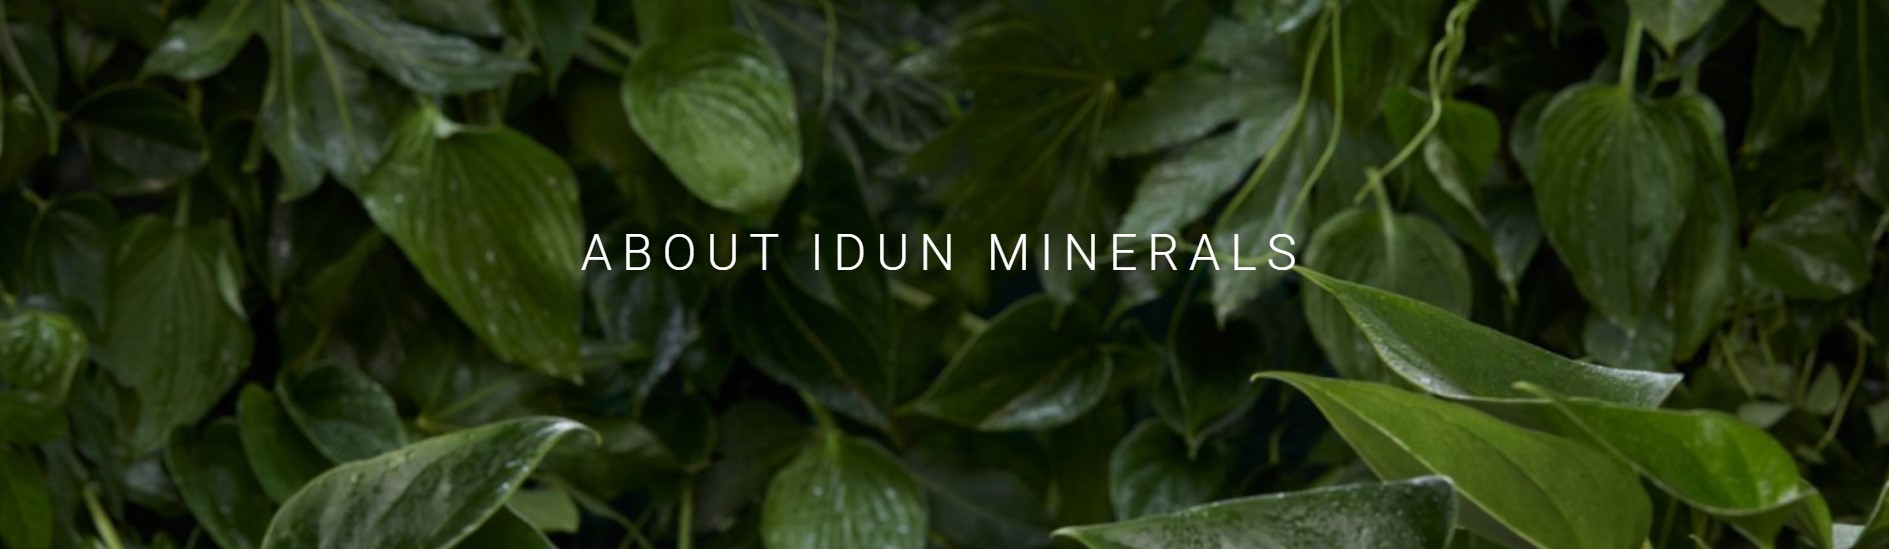 O značce Idun Minerals